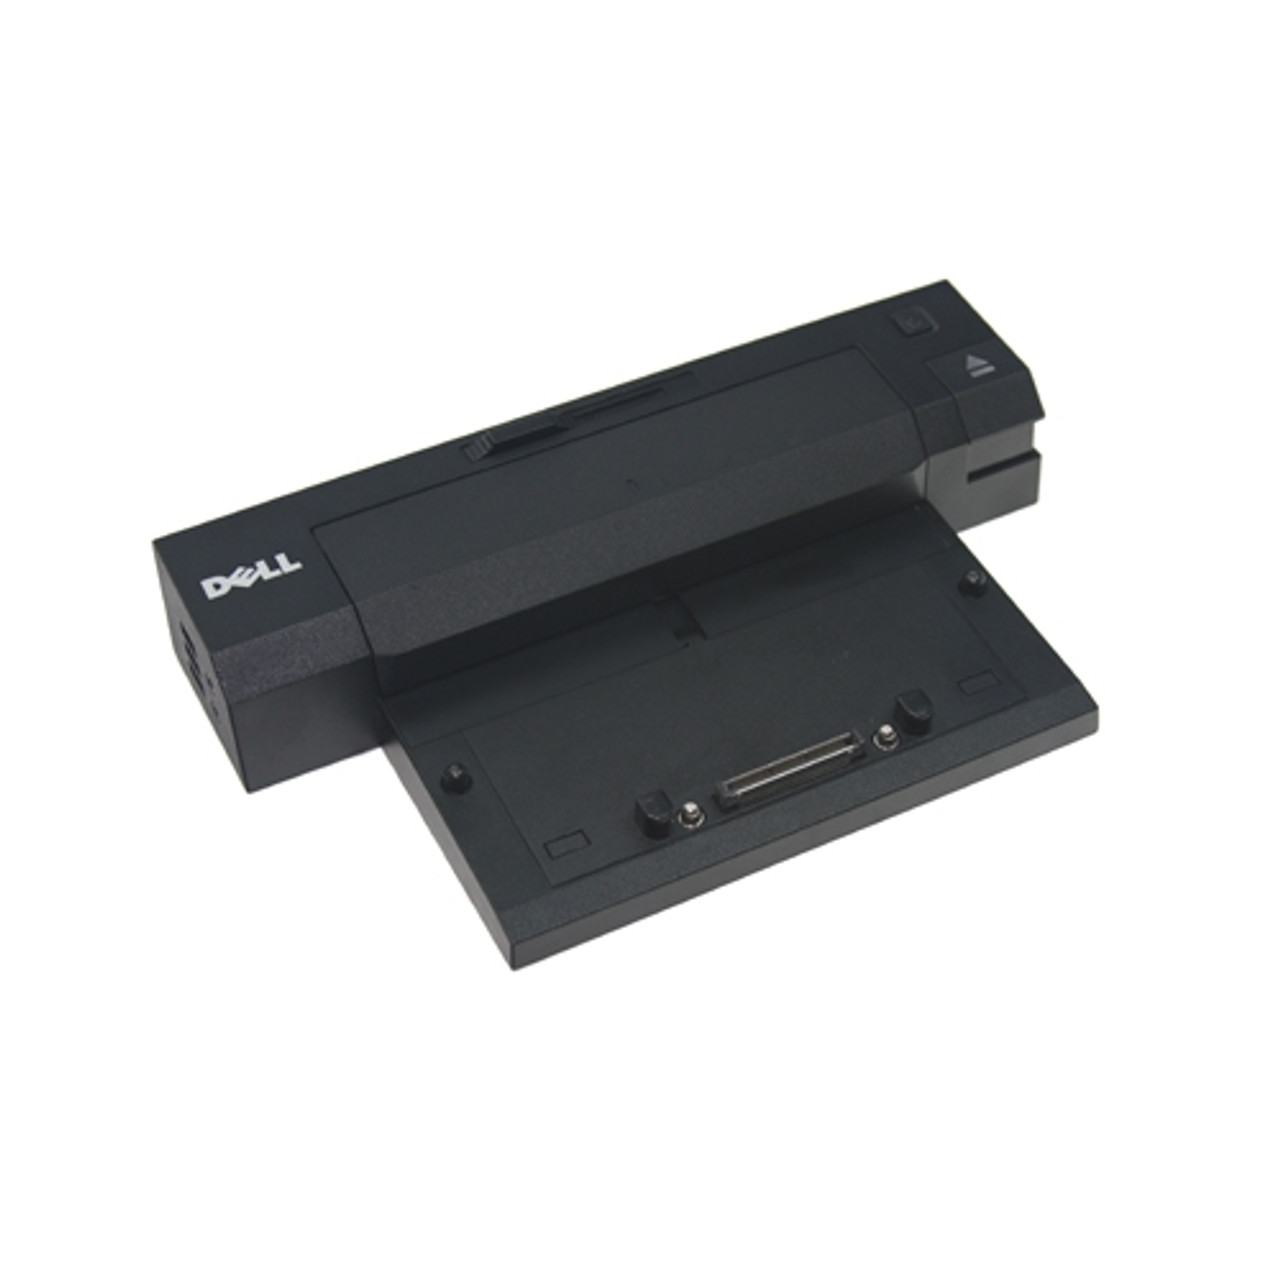 PR02X - Dell -Port REPLICATOR with AC Adapter for Latitude E4200 E4300 E5400